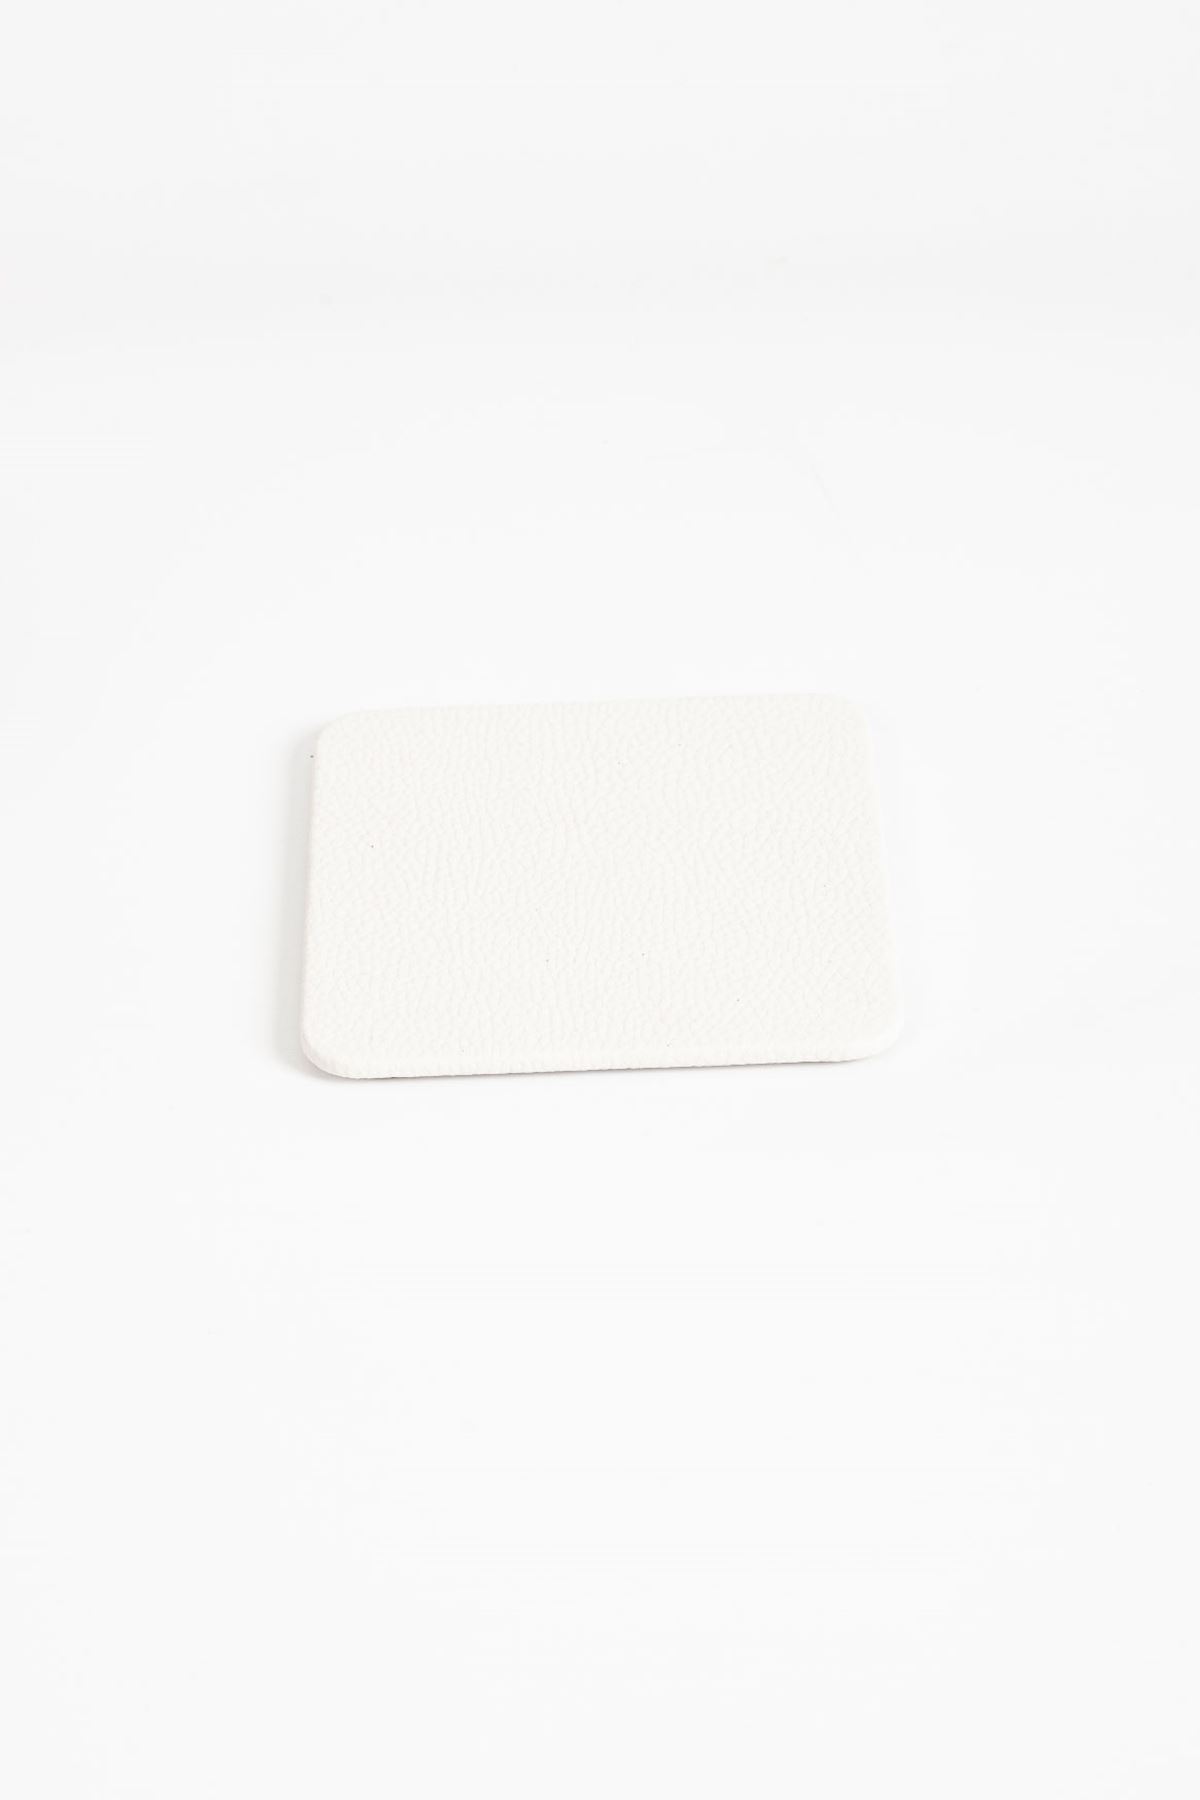 White Leather Coaster 1 Piece